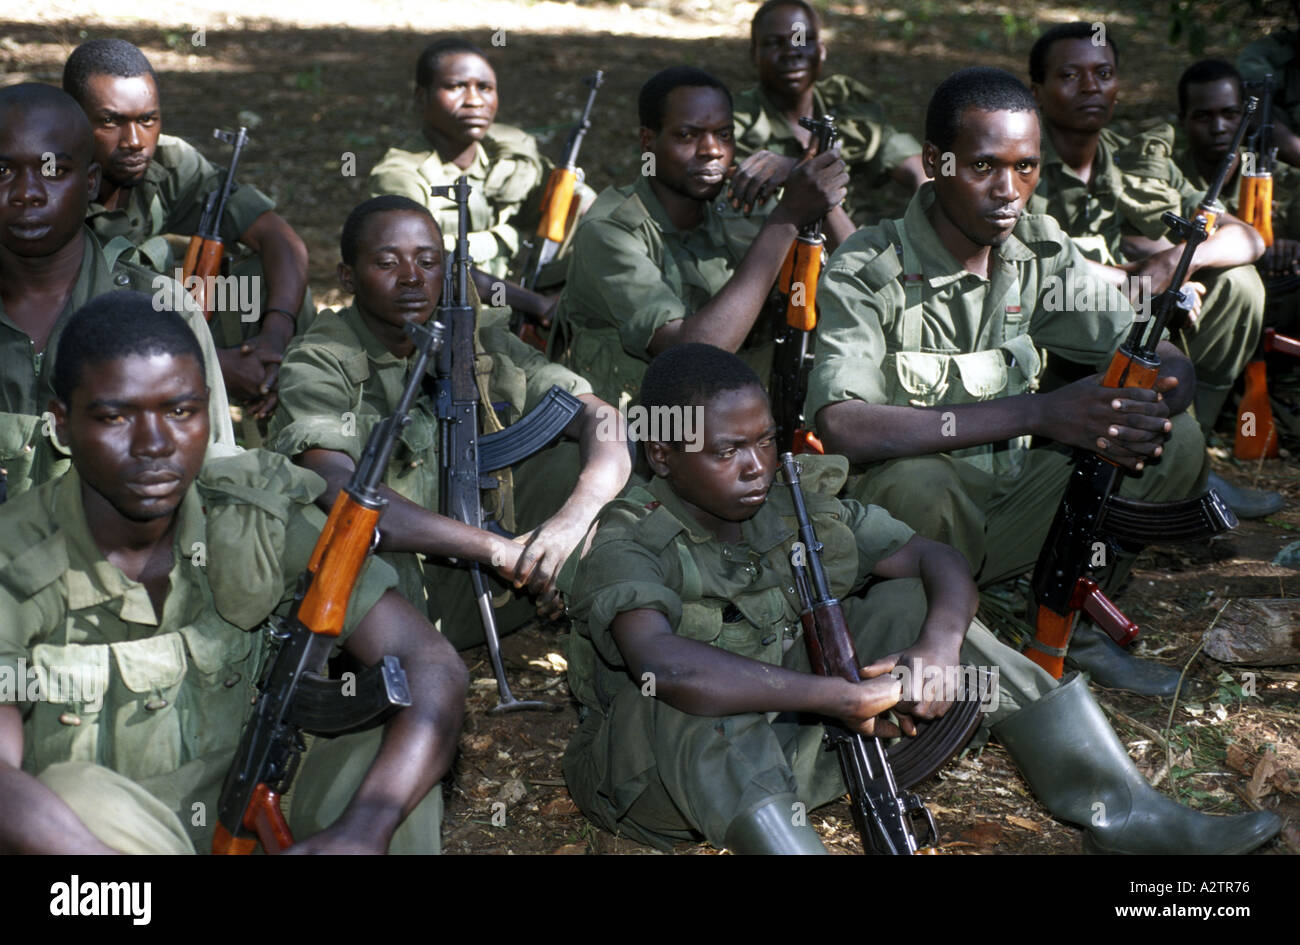 Congo. Ugandan arny soldiers 1999 Stock Photo